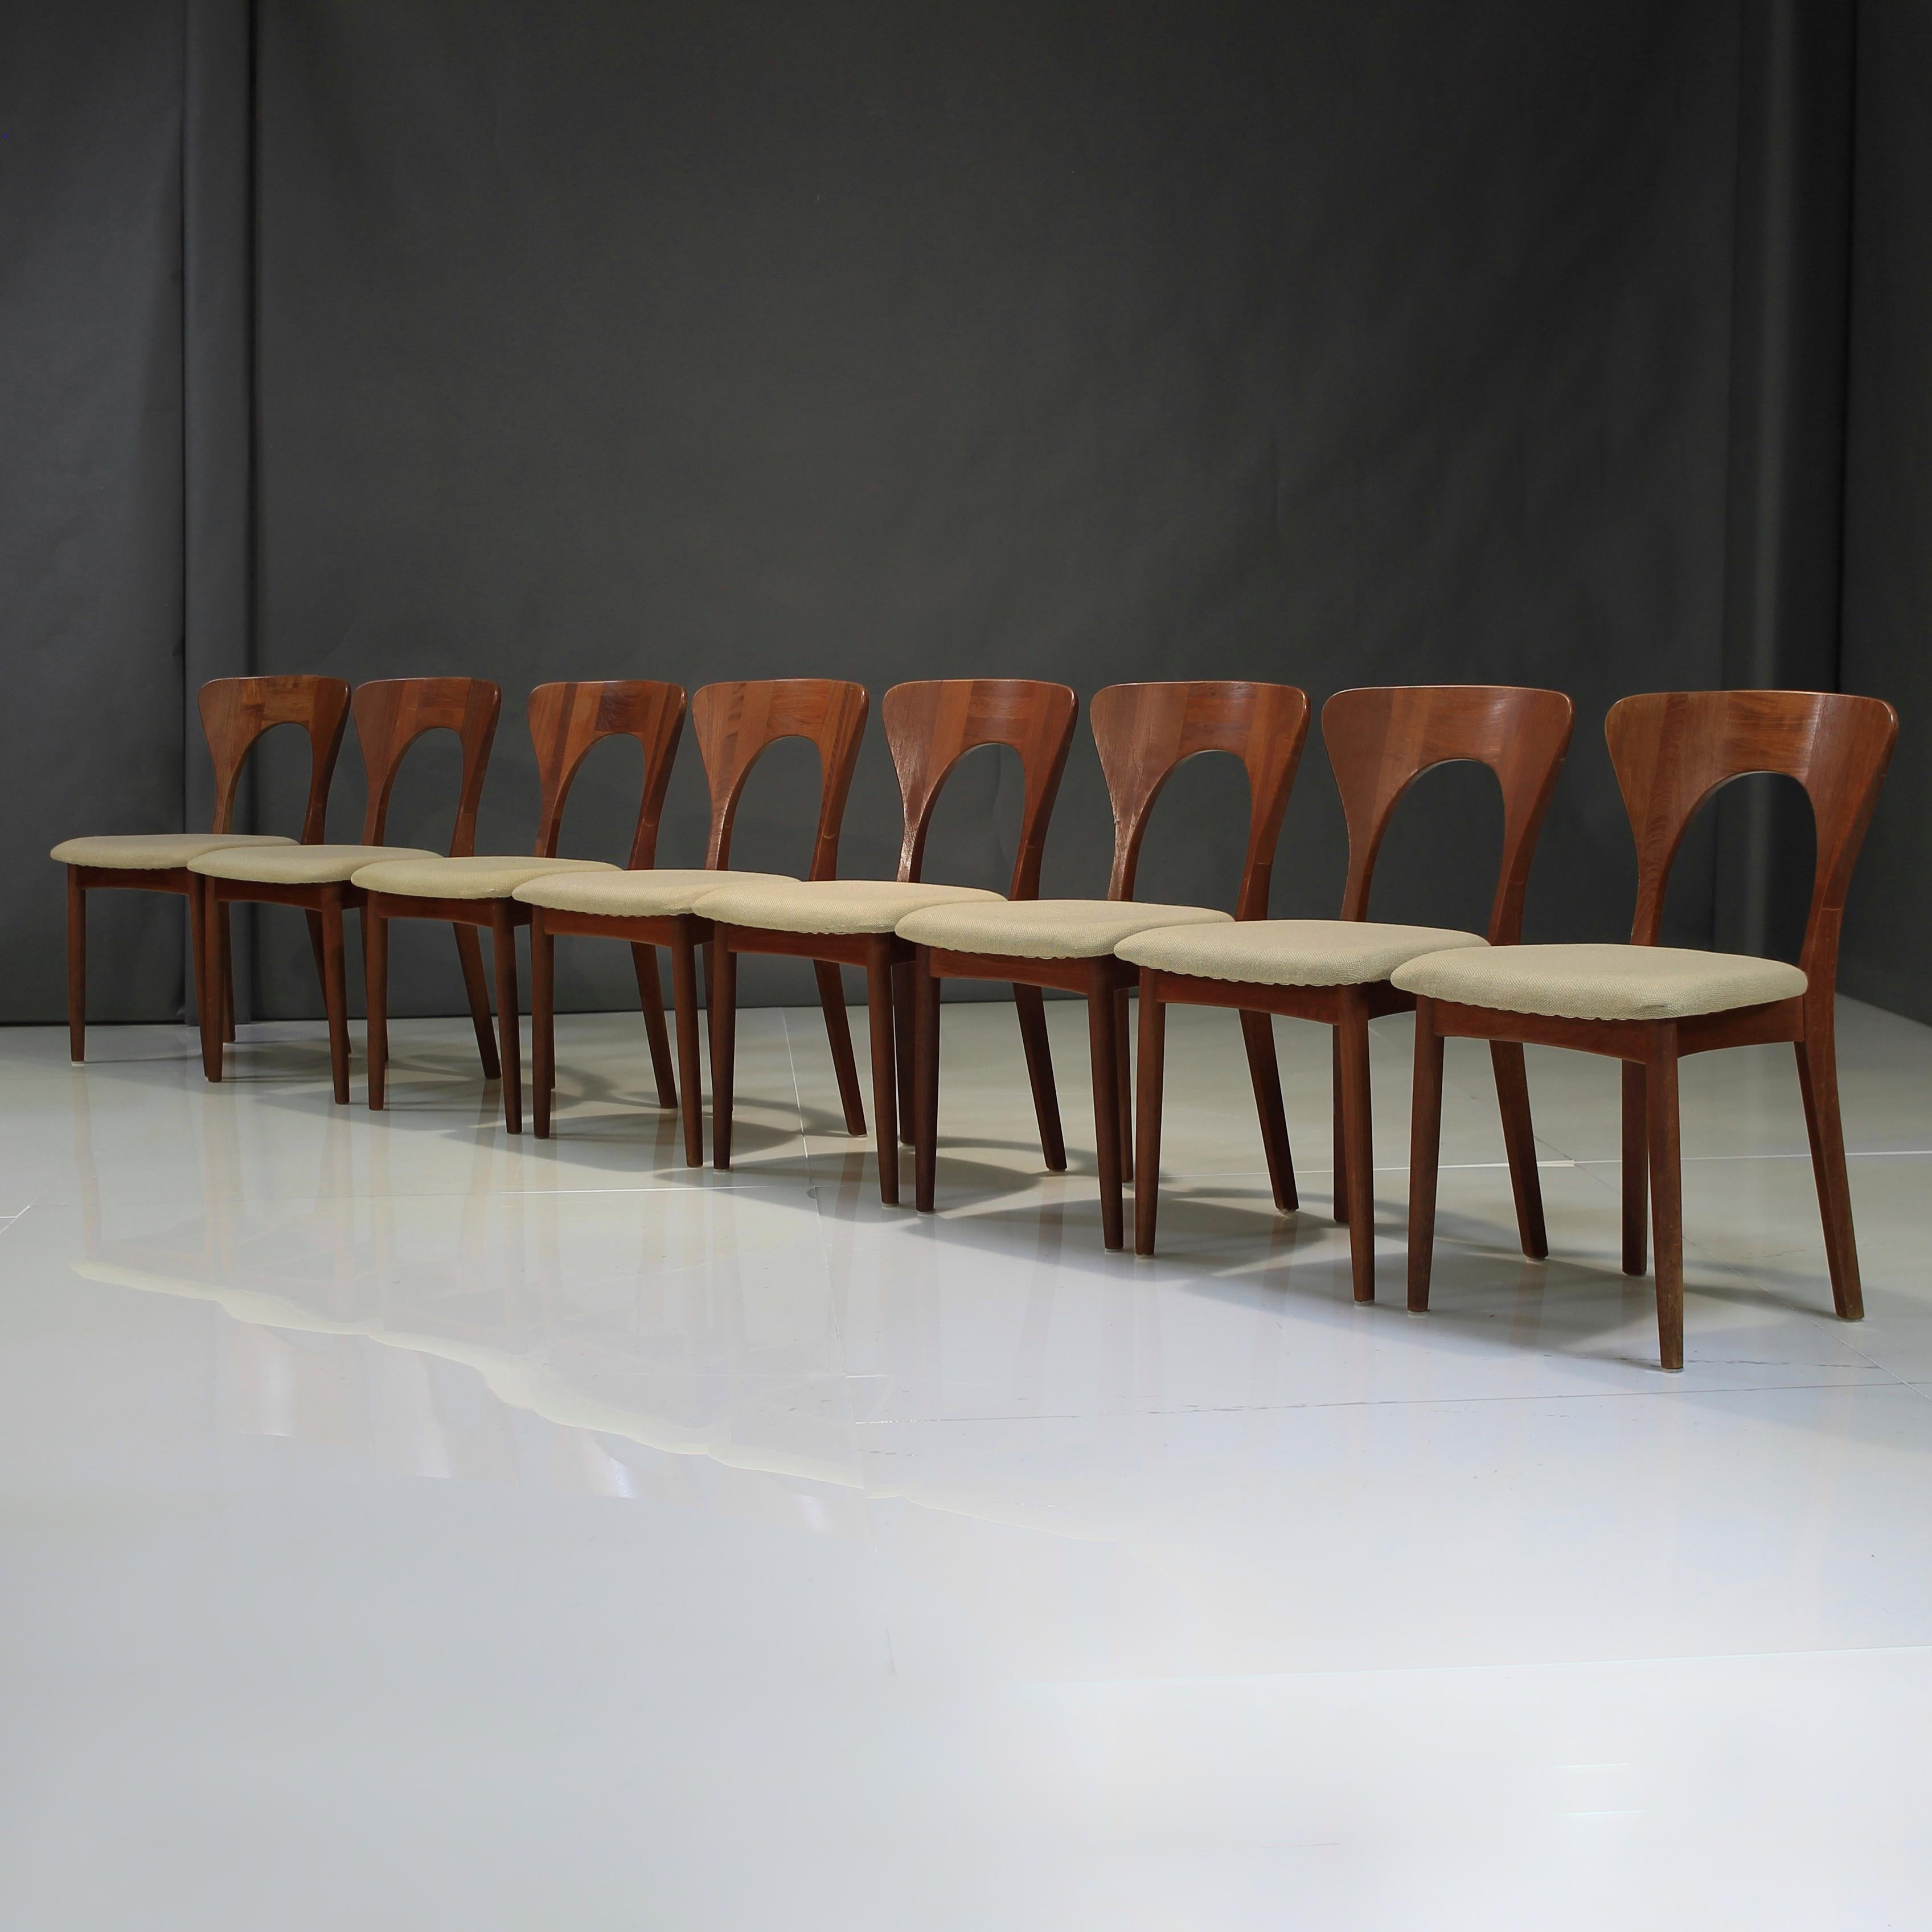 Nous vous présentons ce magnifique ensemble vintage de 8 chaises 'Peters' en teck par Niels Koefoed pour Koefoeds Hornslet.u2028u2028

Il présente un teck magnifiquement vieilli, avec des lignes et des détails artisanaux parmi les plus fins du